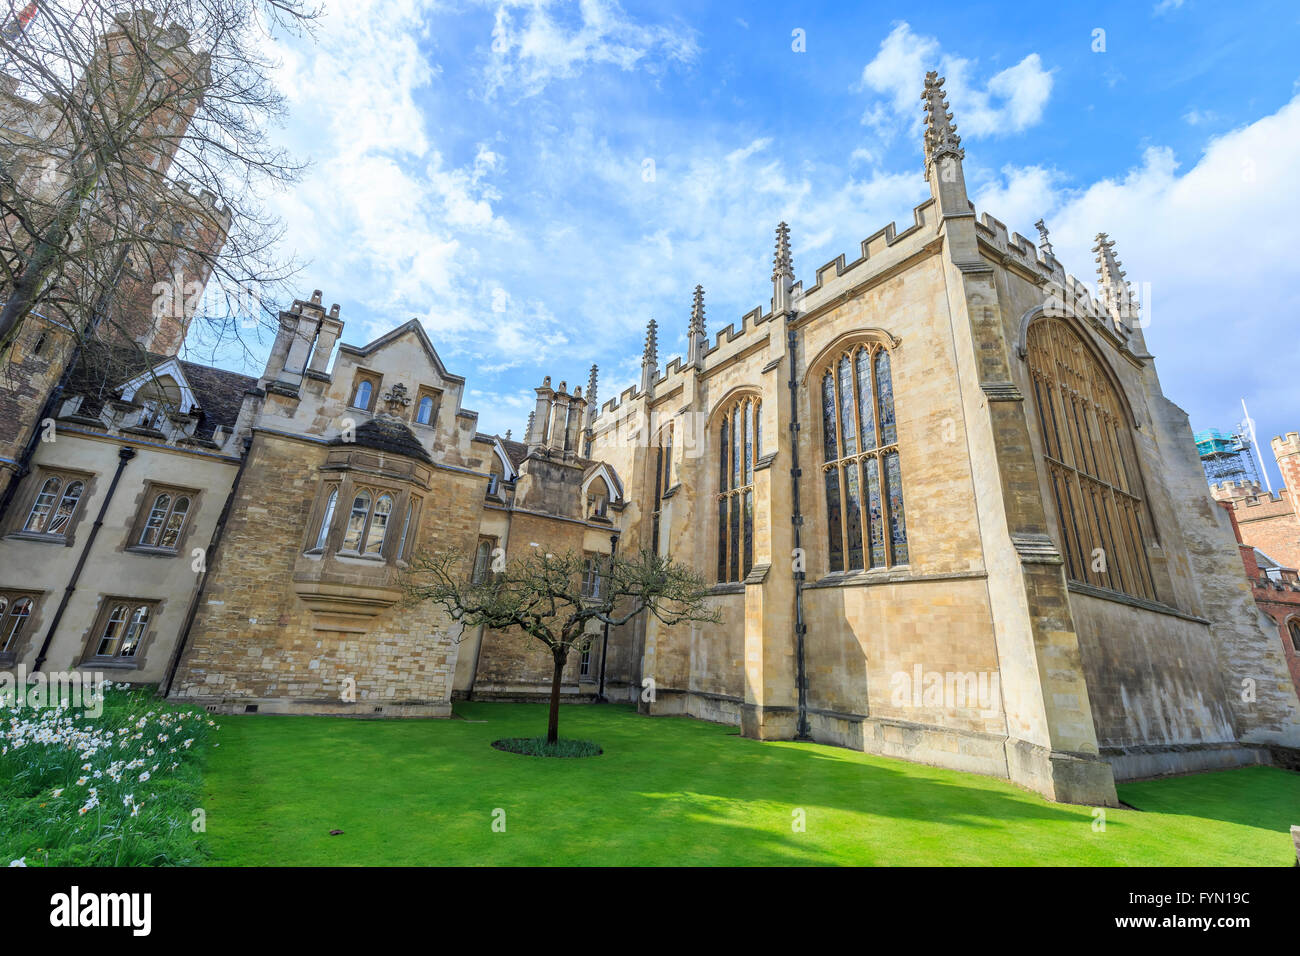 Der berühmten Newtonschen Apfelbaum an der Universität Cambridge, Großbritannien Stockfoto